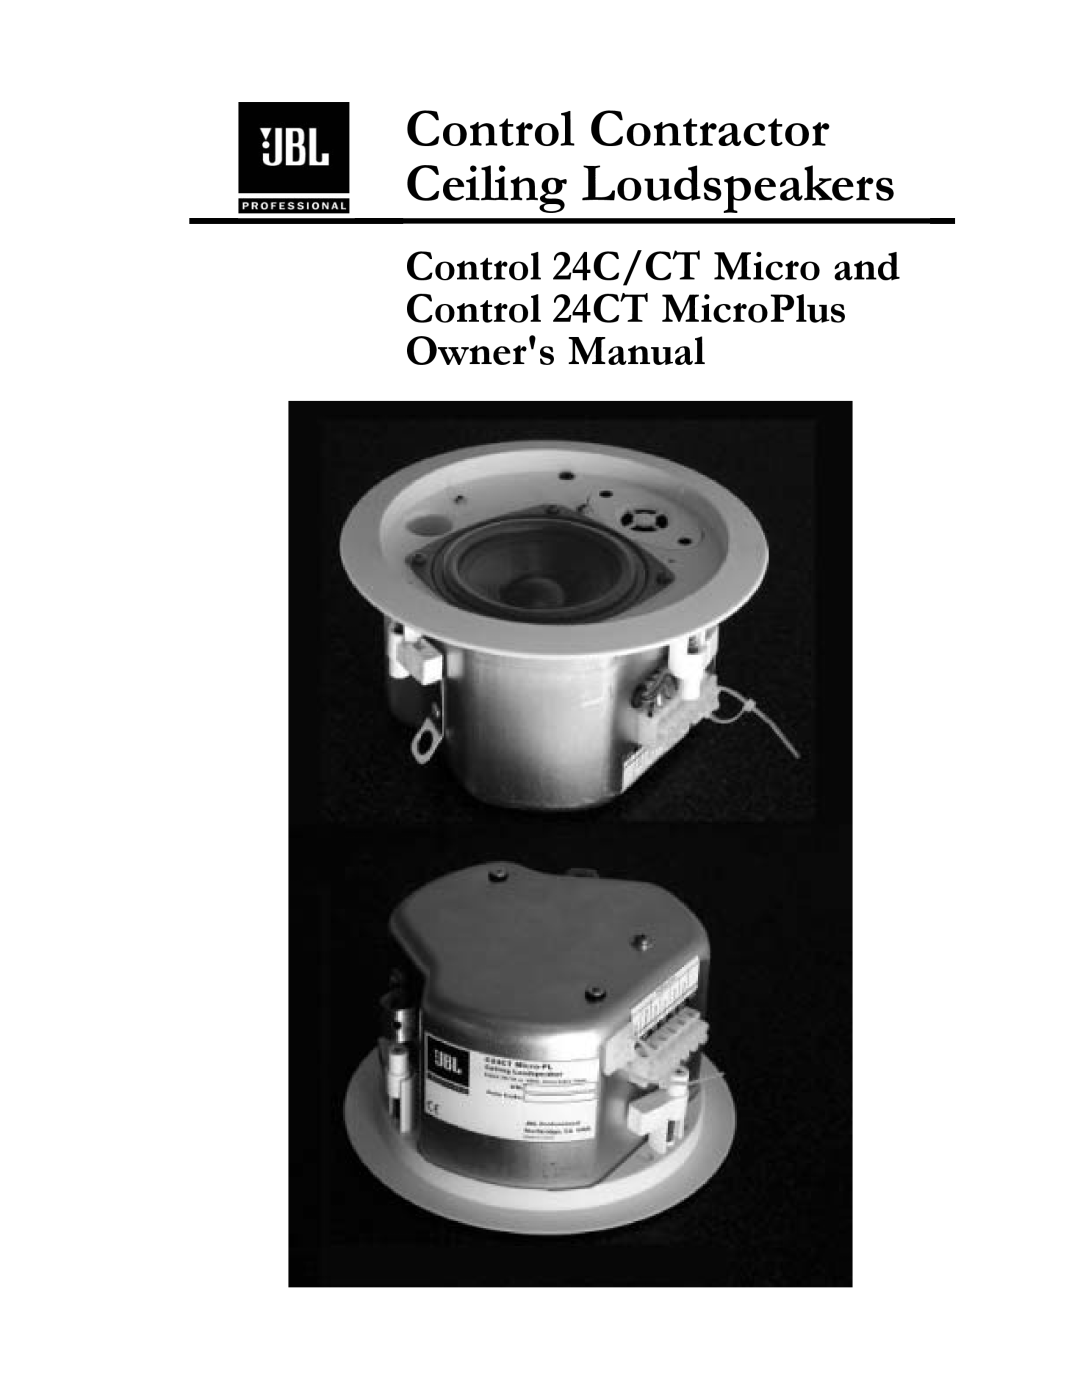 JBL 24C/CT owner manual Control Contractor Ceiling Loudspeakers 